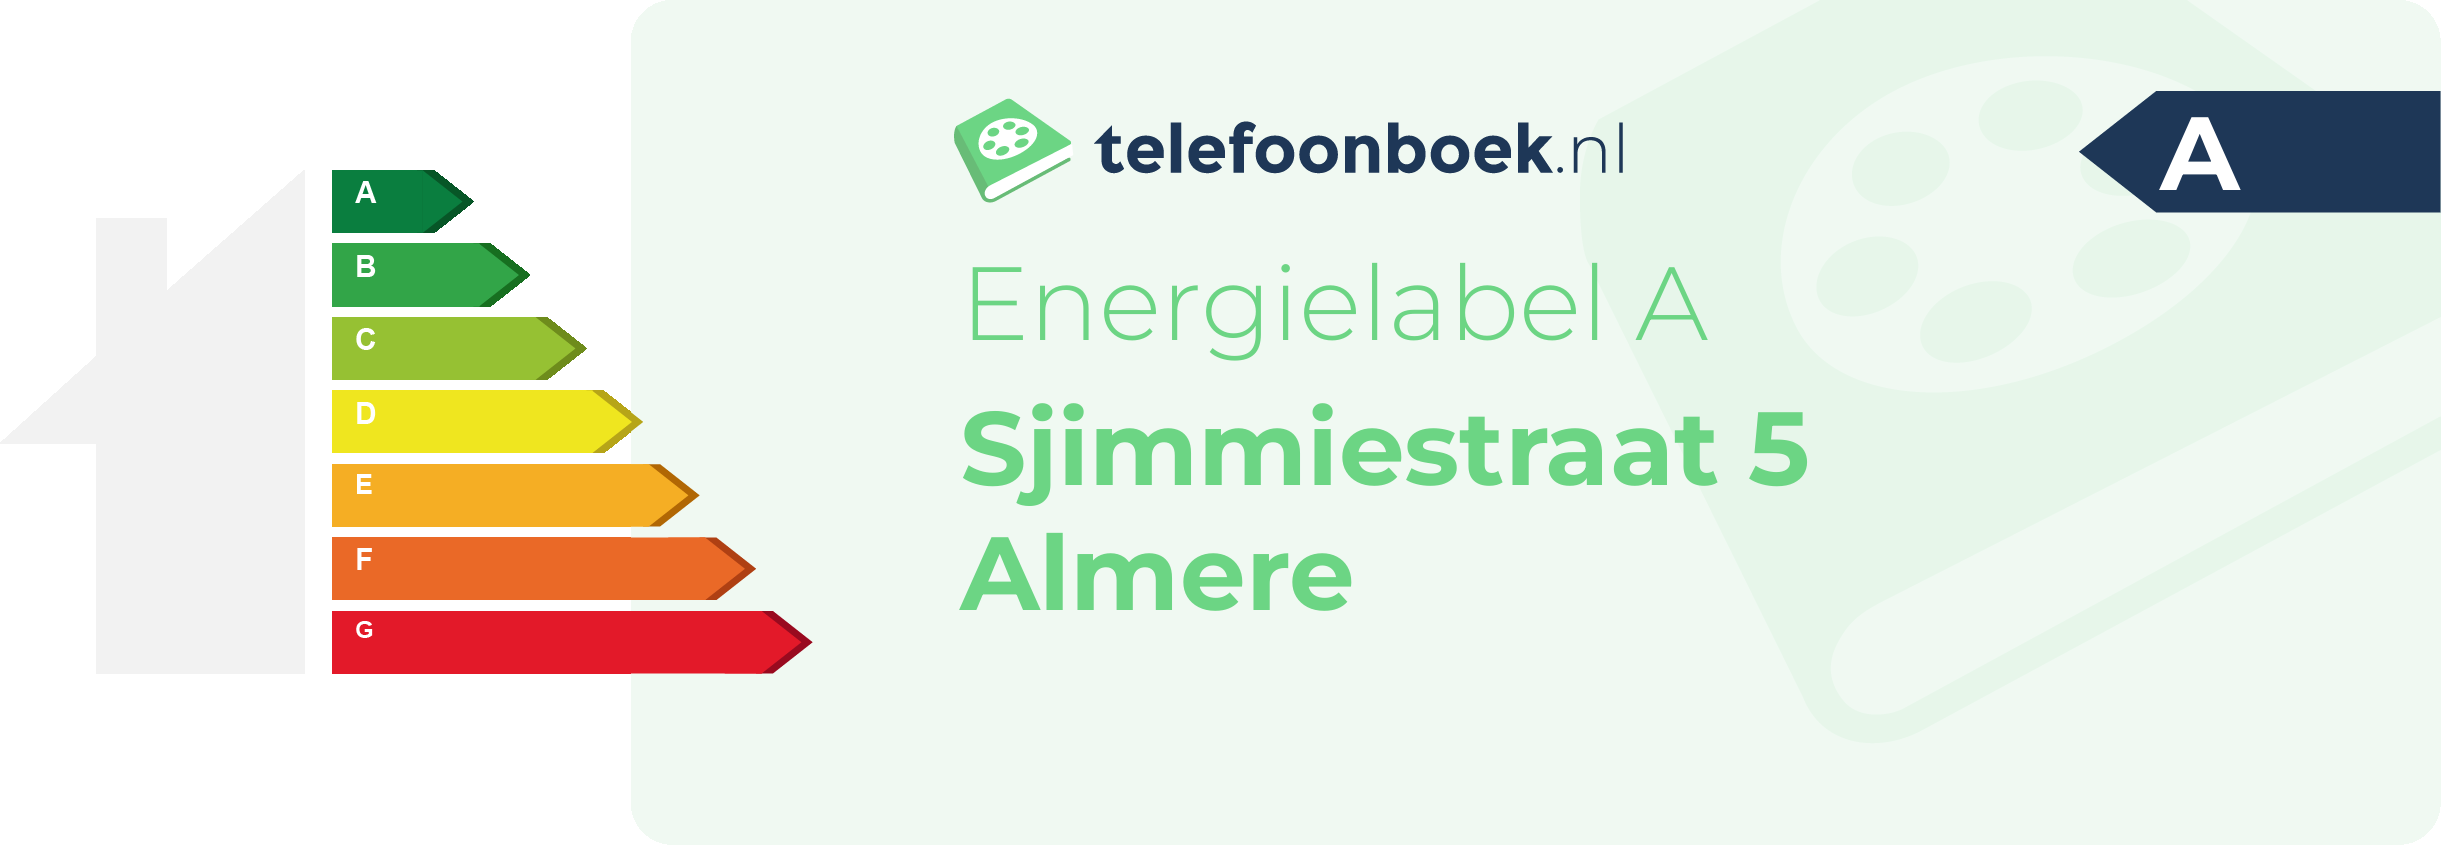 Energielabel Sjimmiestraat 5 Almere